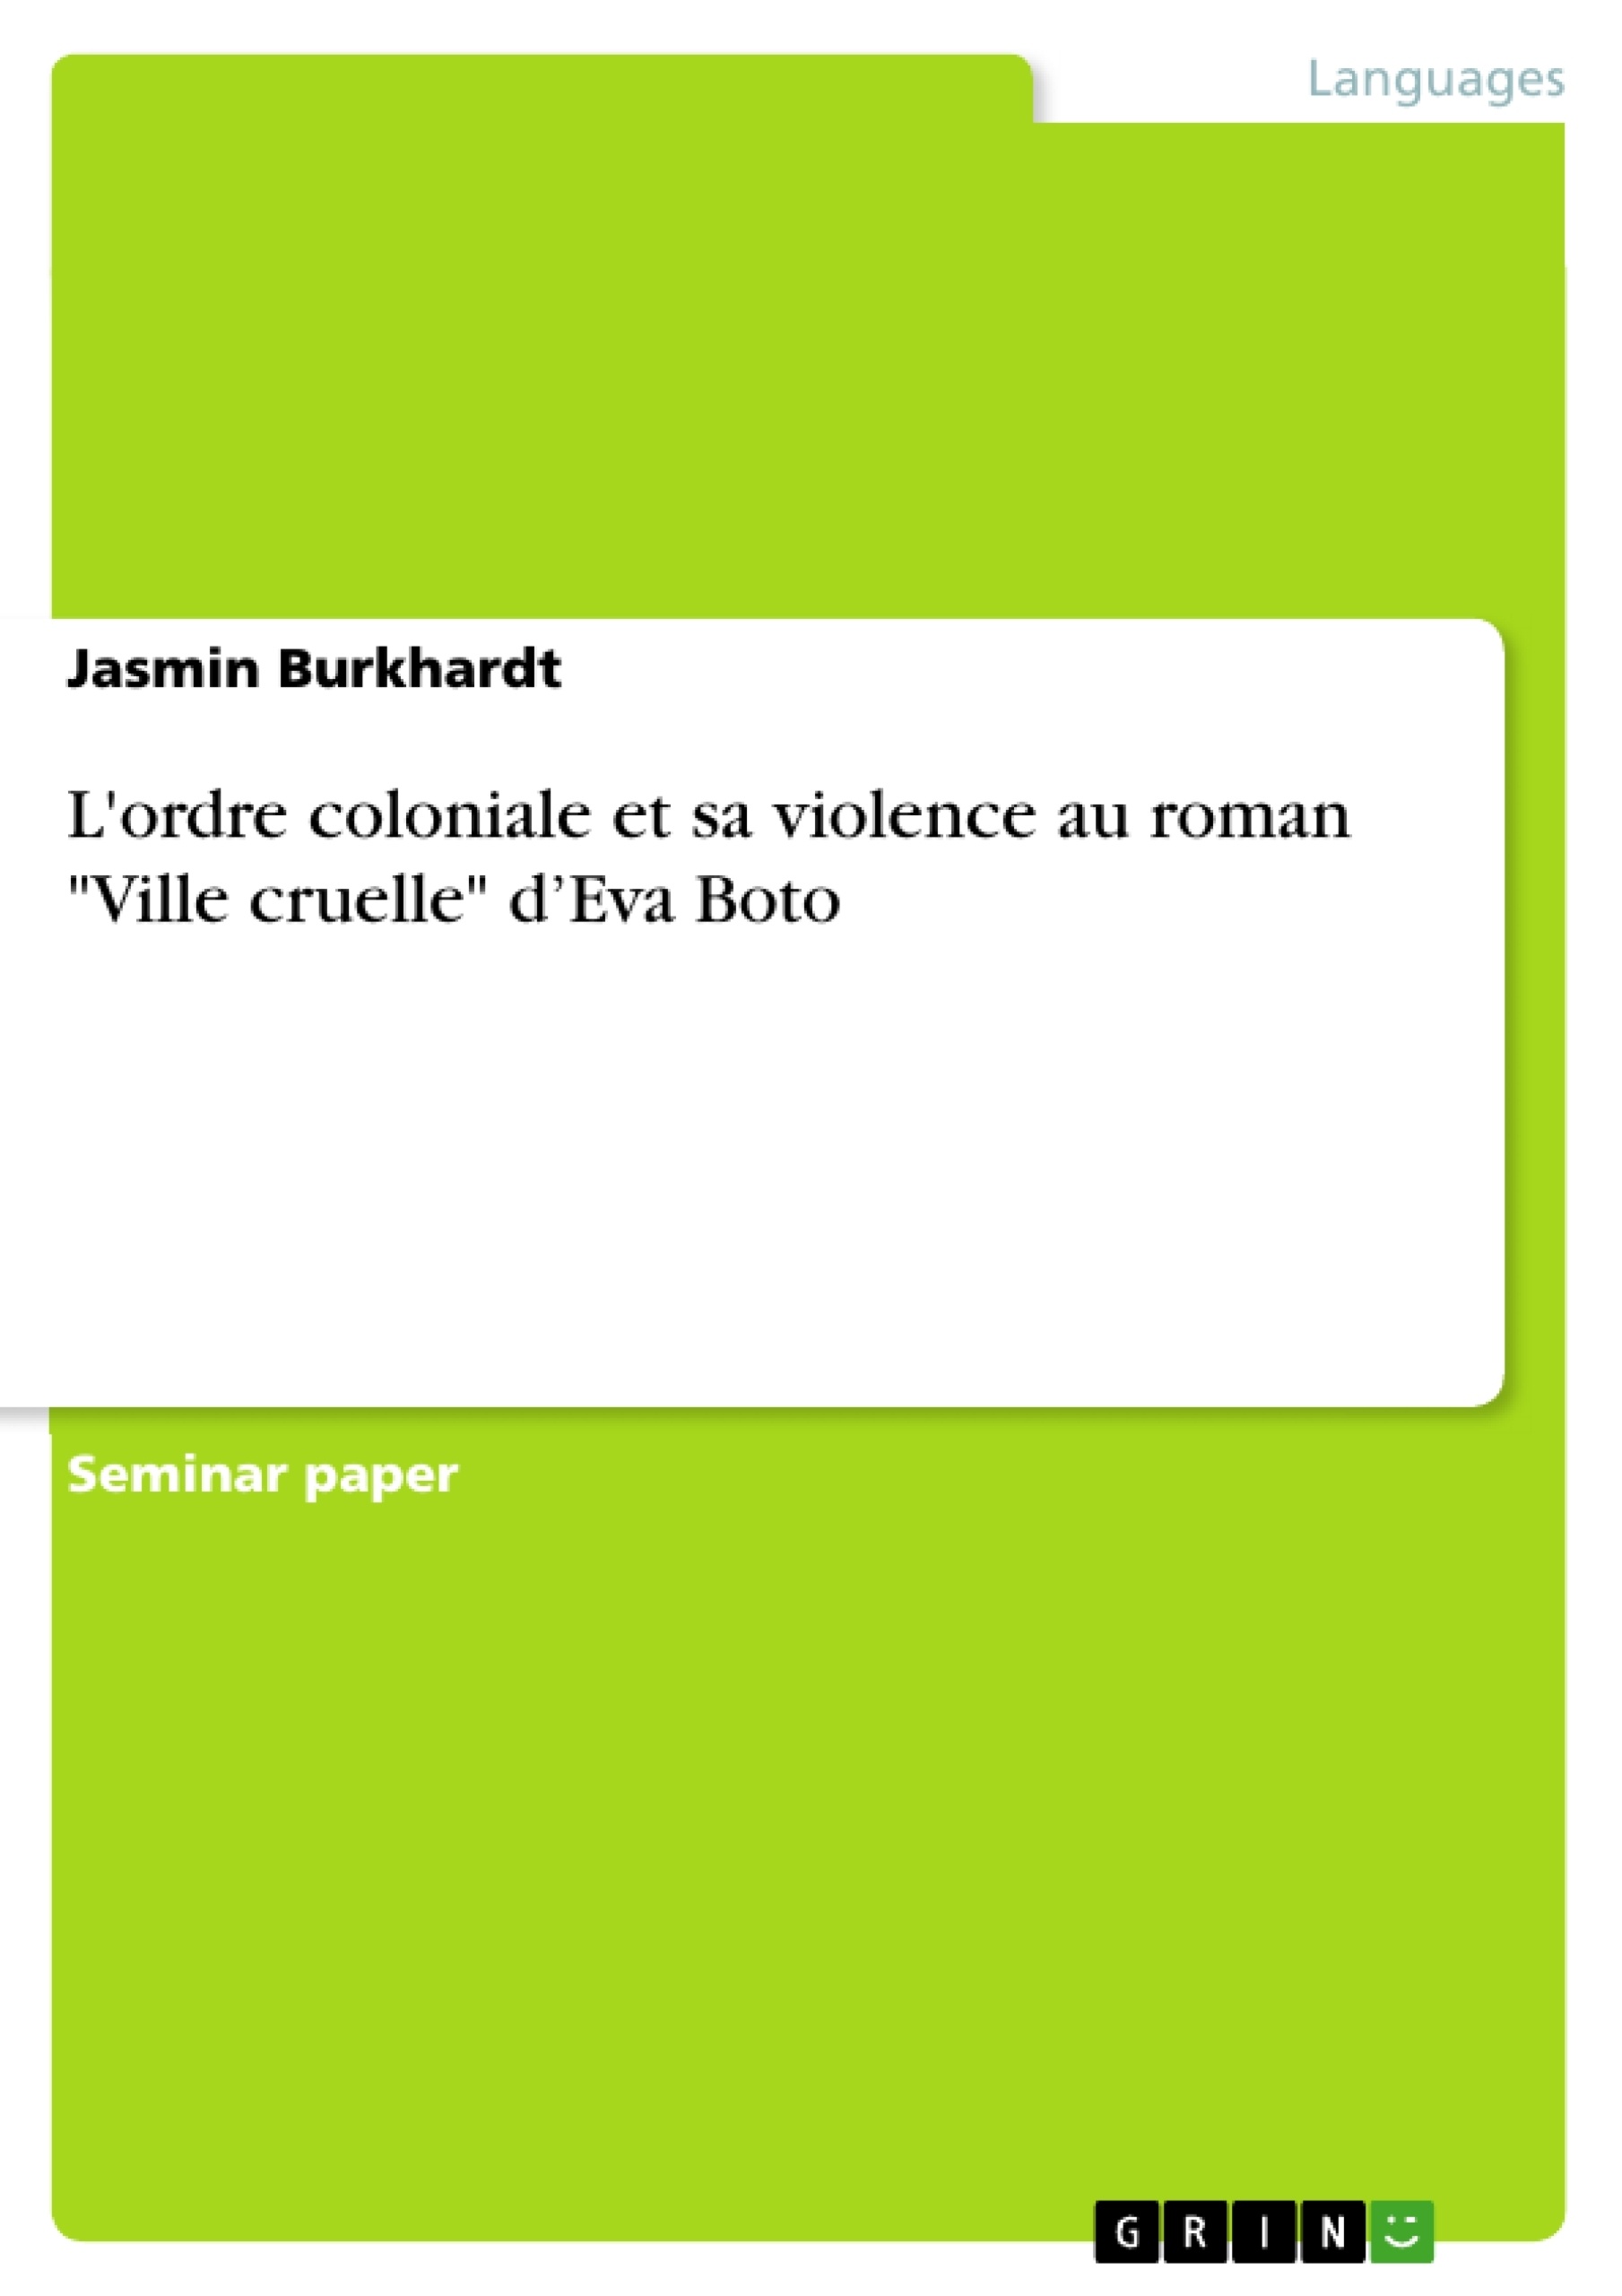 Titre: L'ordre coloniale et sa violence au roman "Ville cruelle" d’Eva Boto